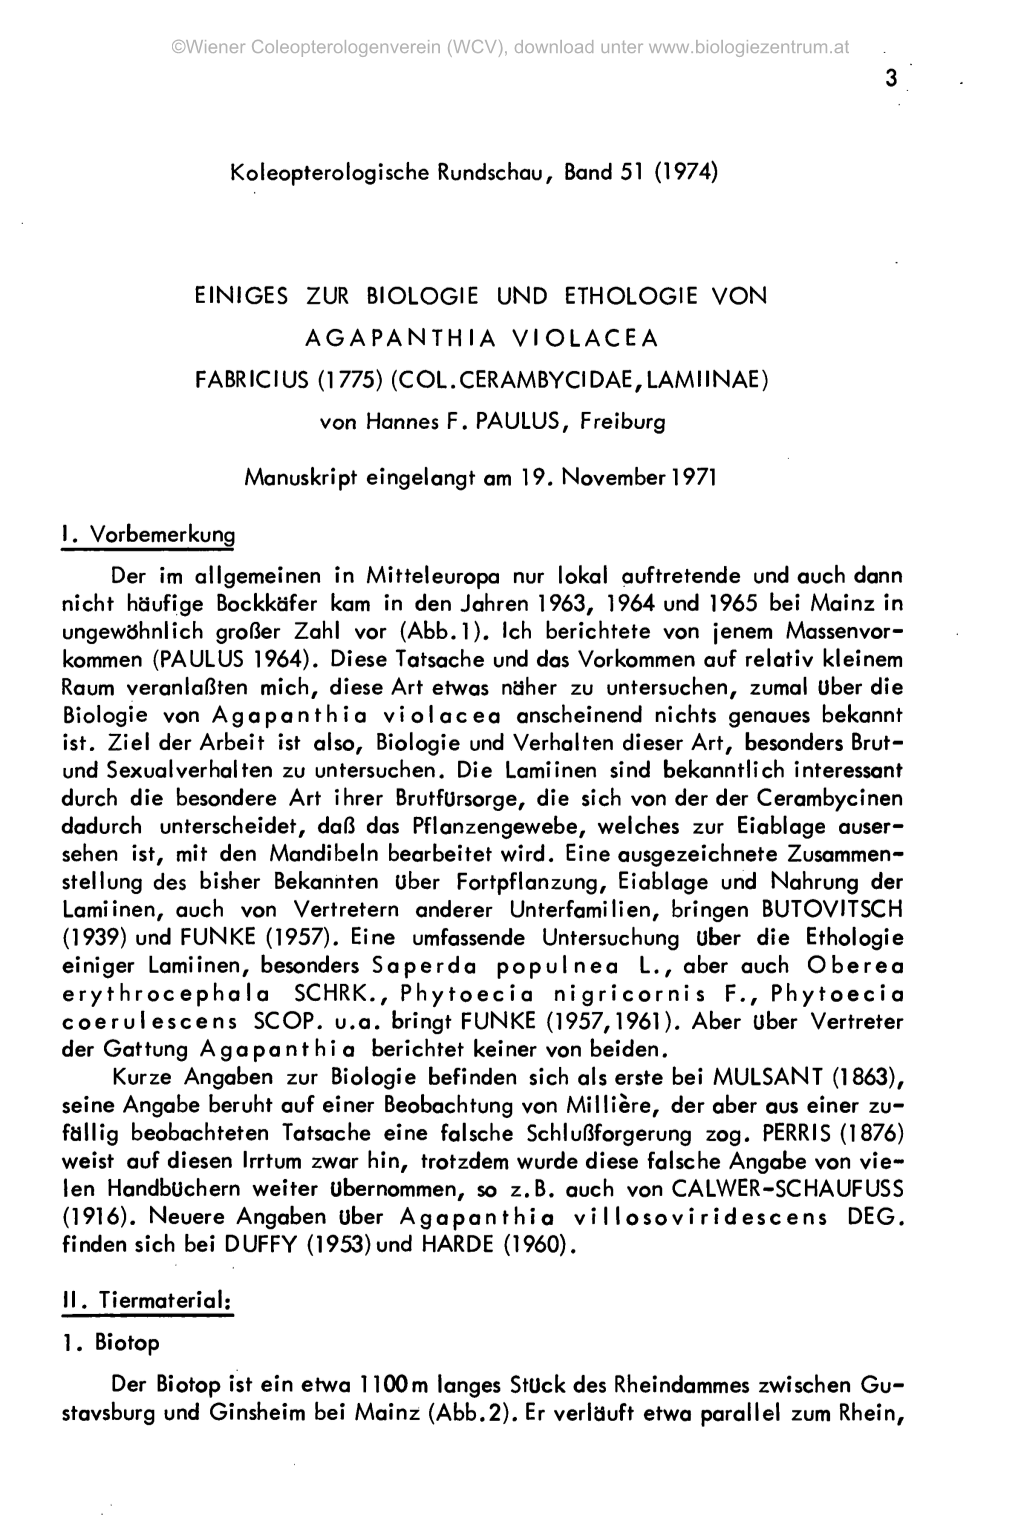 EINIGES ZUR BIOLOGIE UND ETHOLOGIE VON AGAPANTHIA VIOLACEA FABRICIUS (1775) (COL.CERAMBYCIDAE,LAMIINAE) Von Hannes F